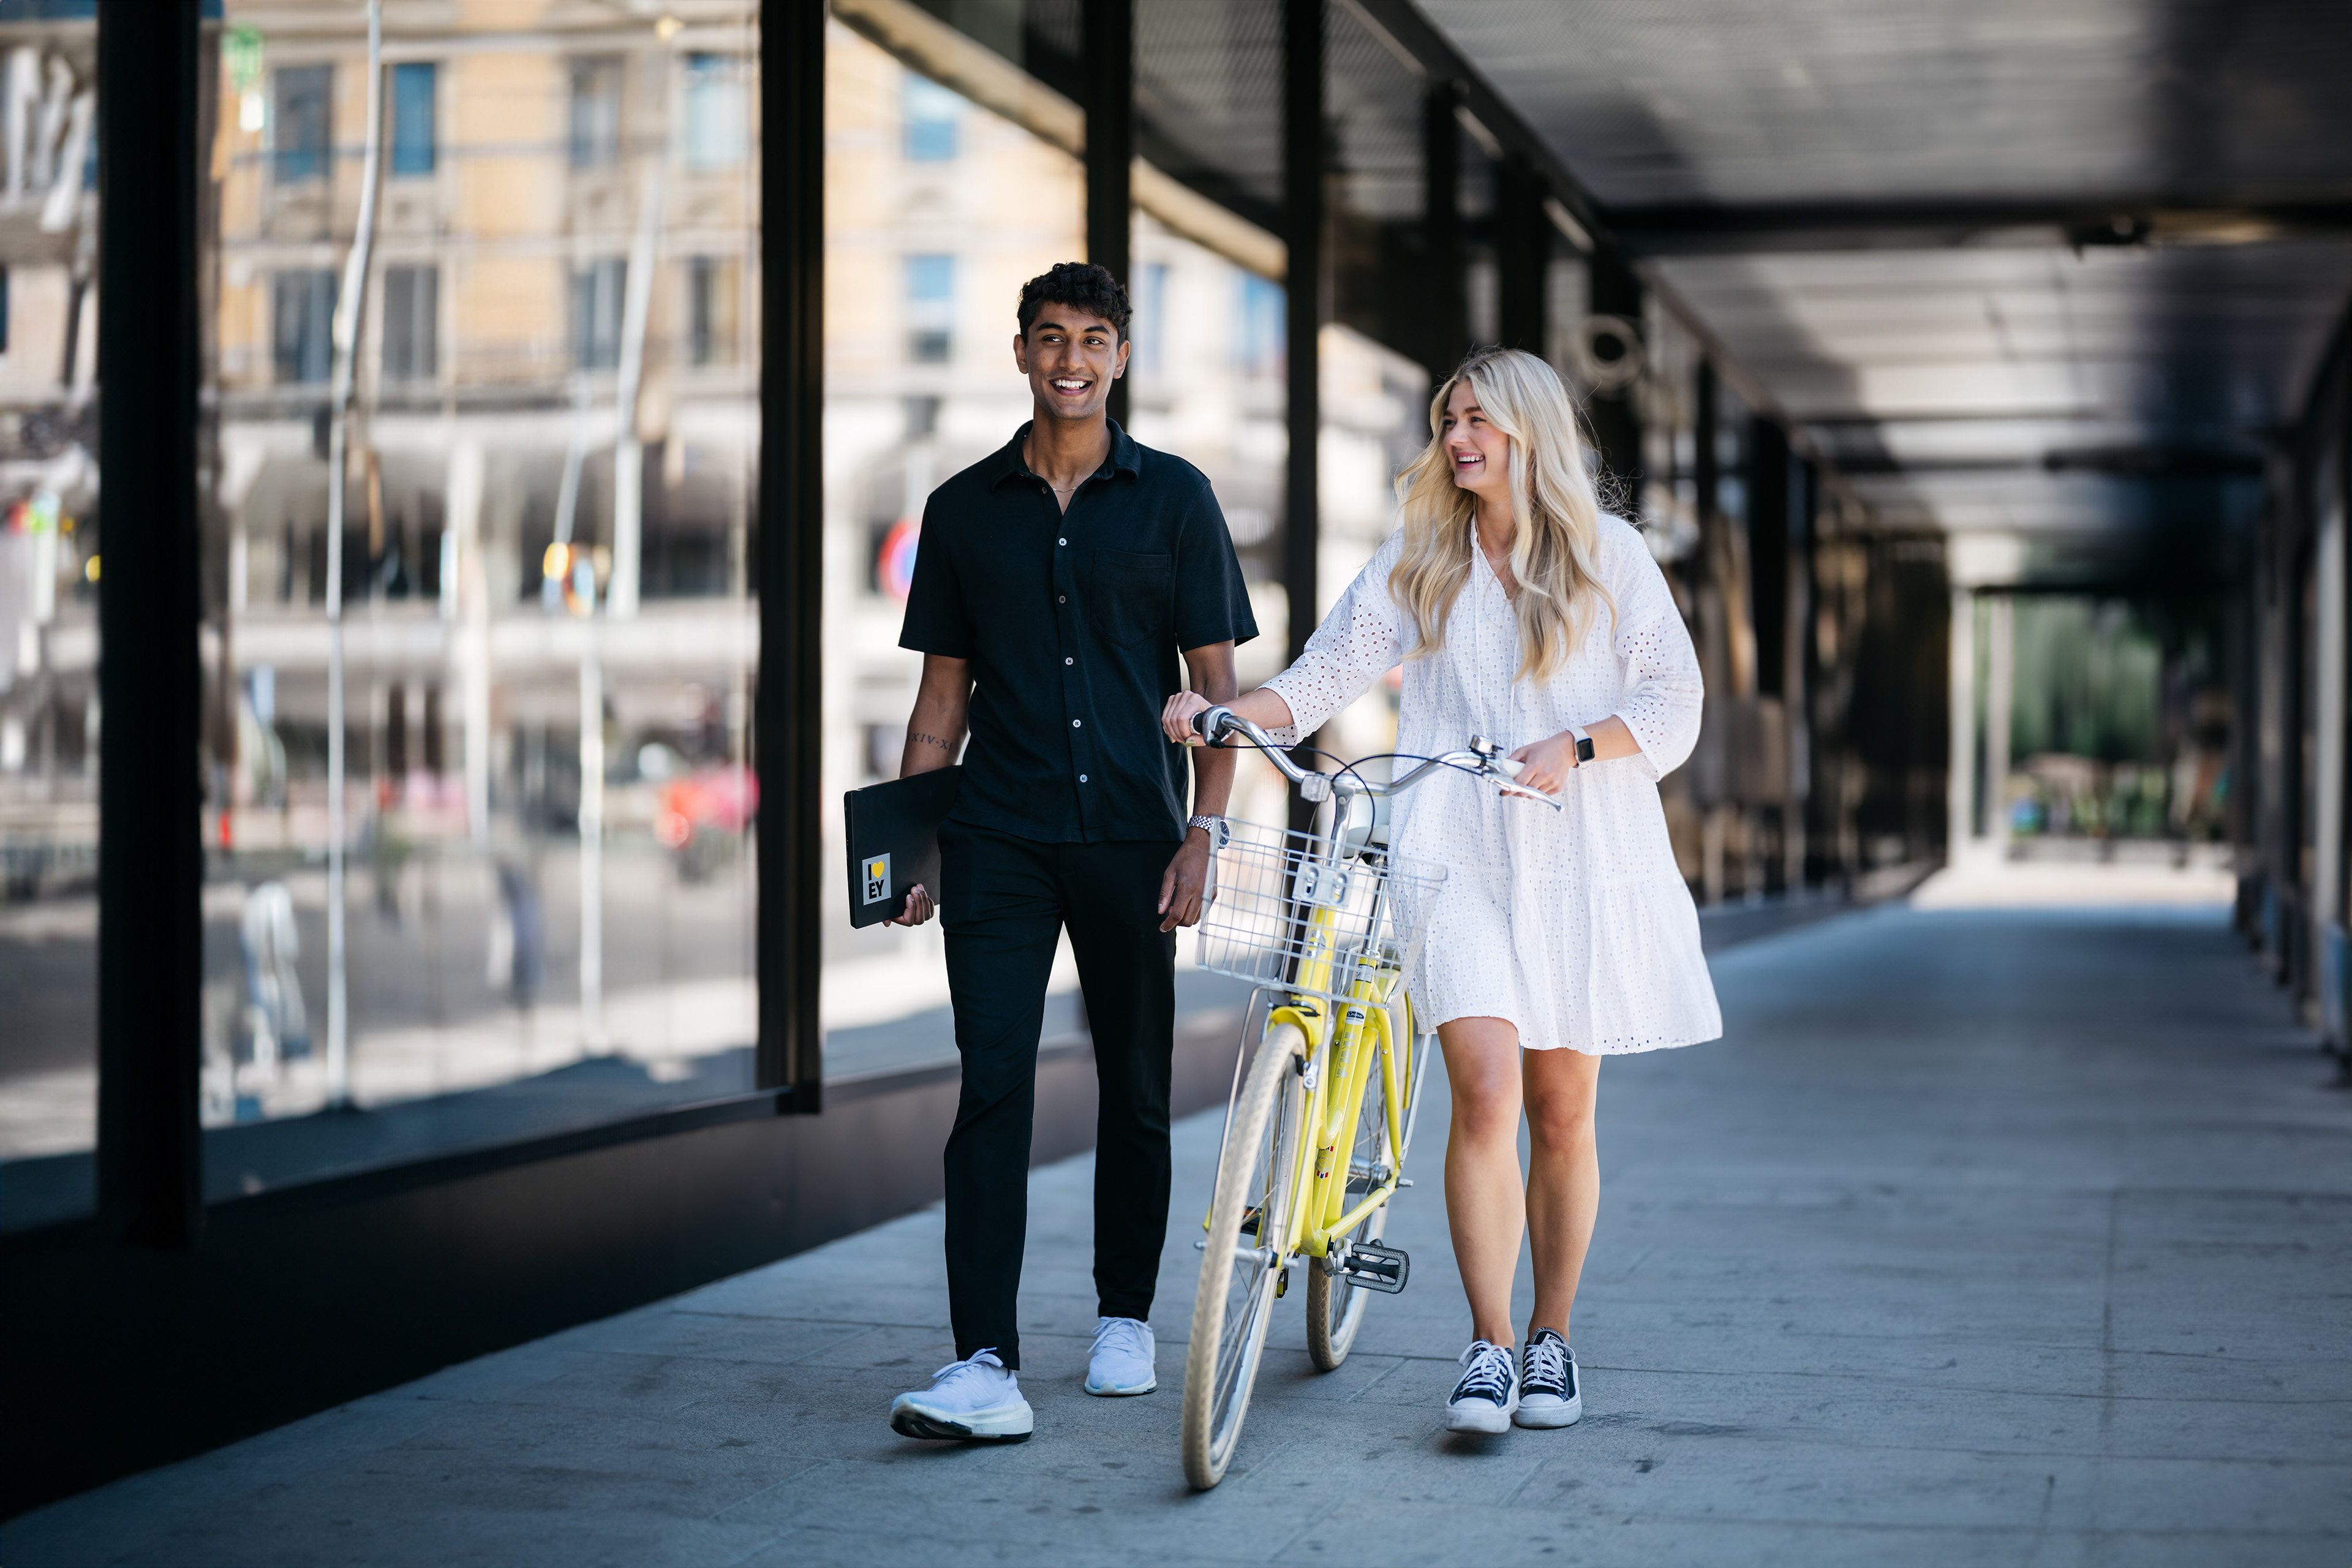 En mann og en kvinne går nedover veien med en gul sykkel.